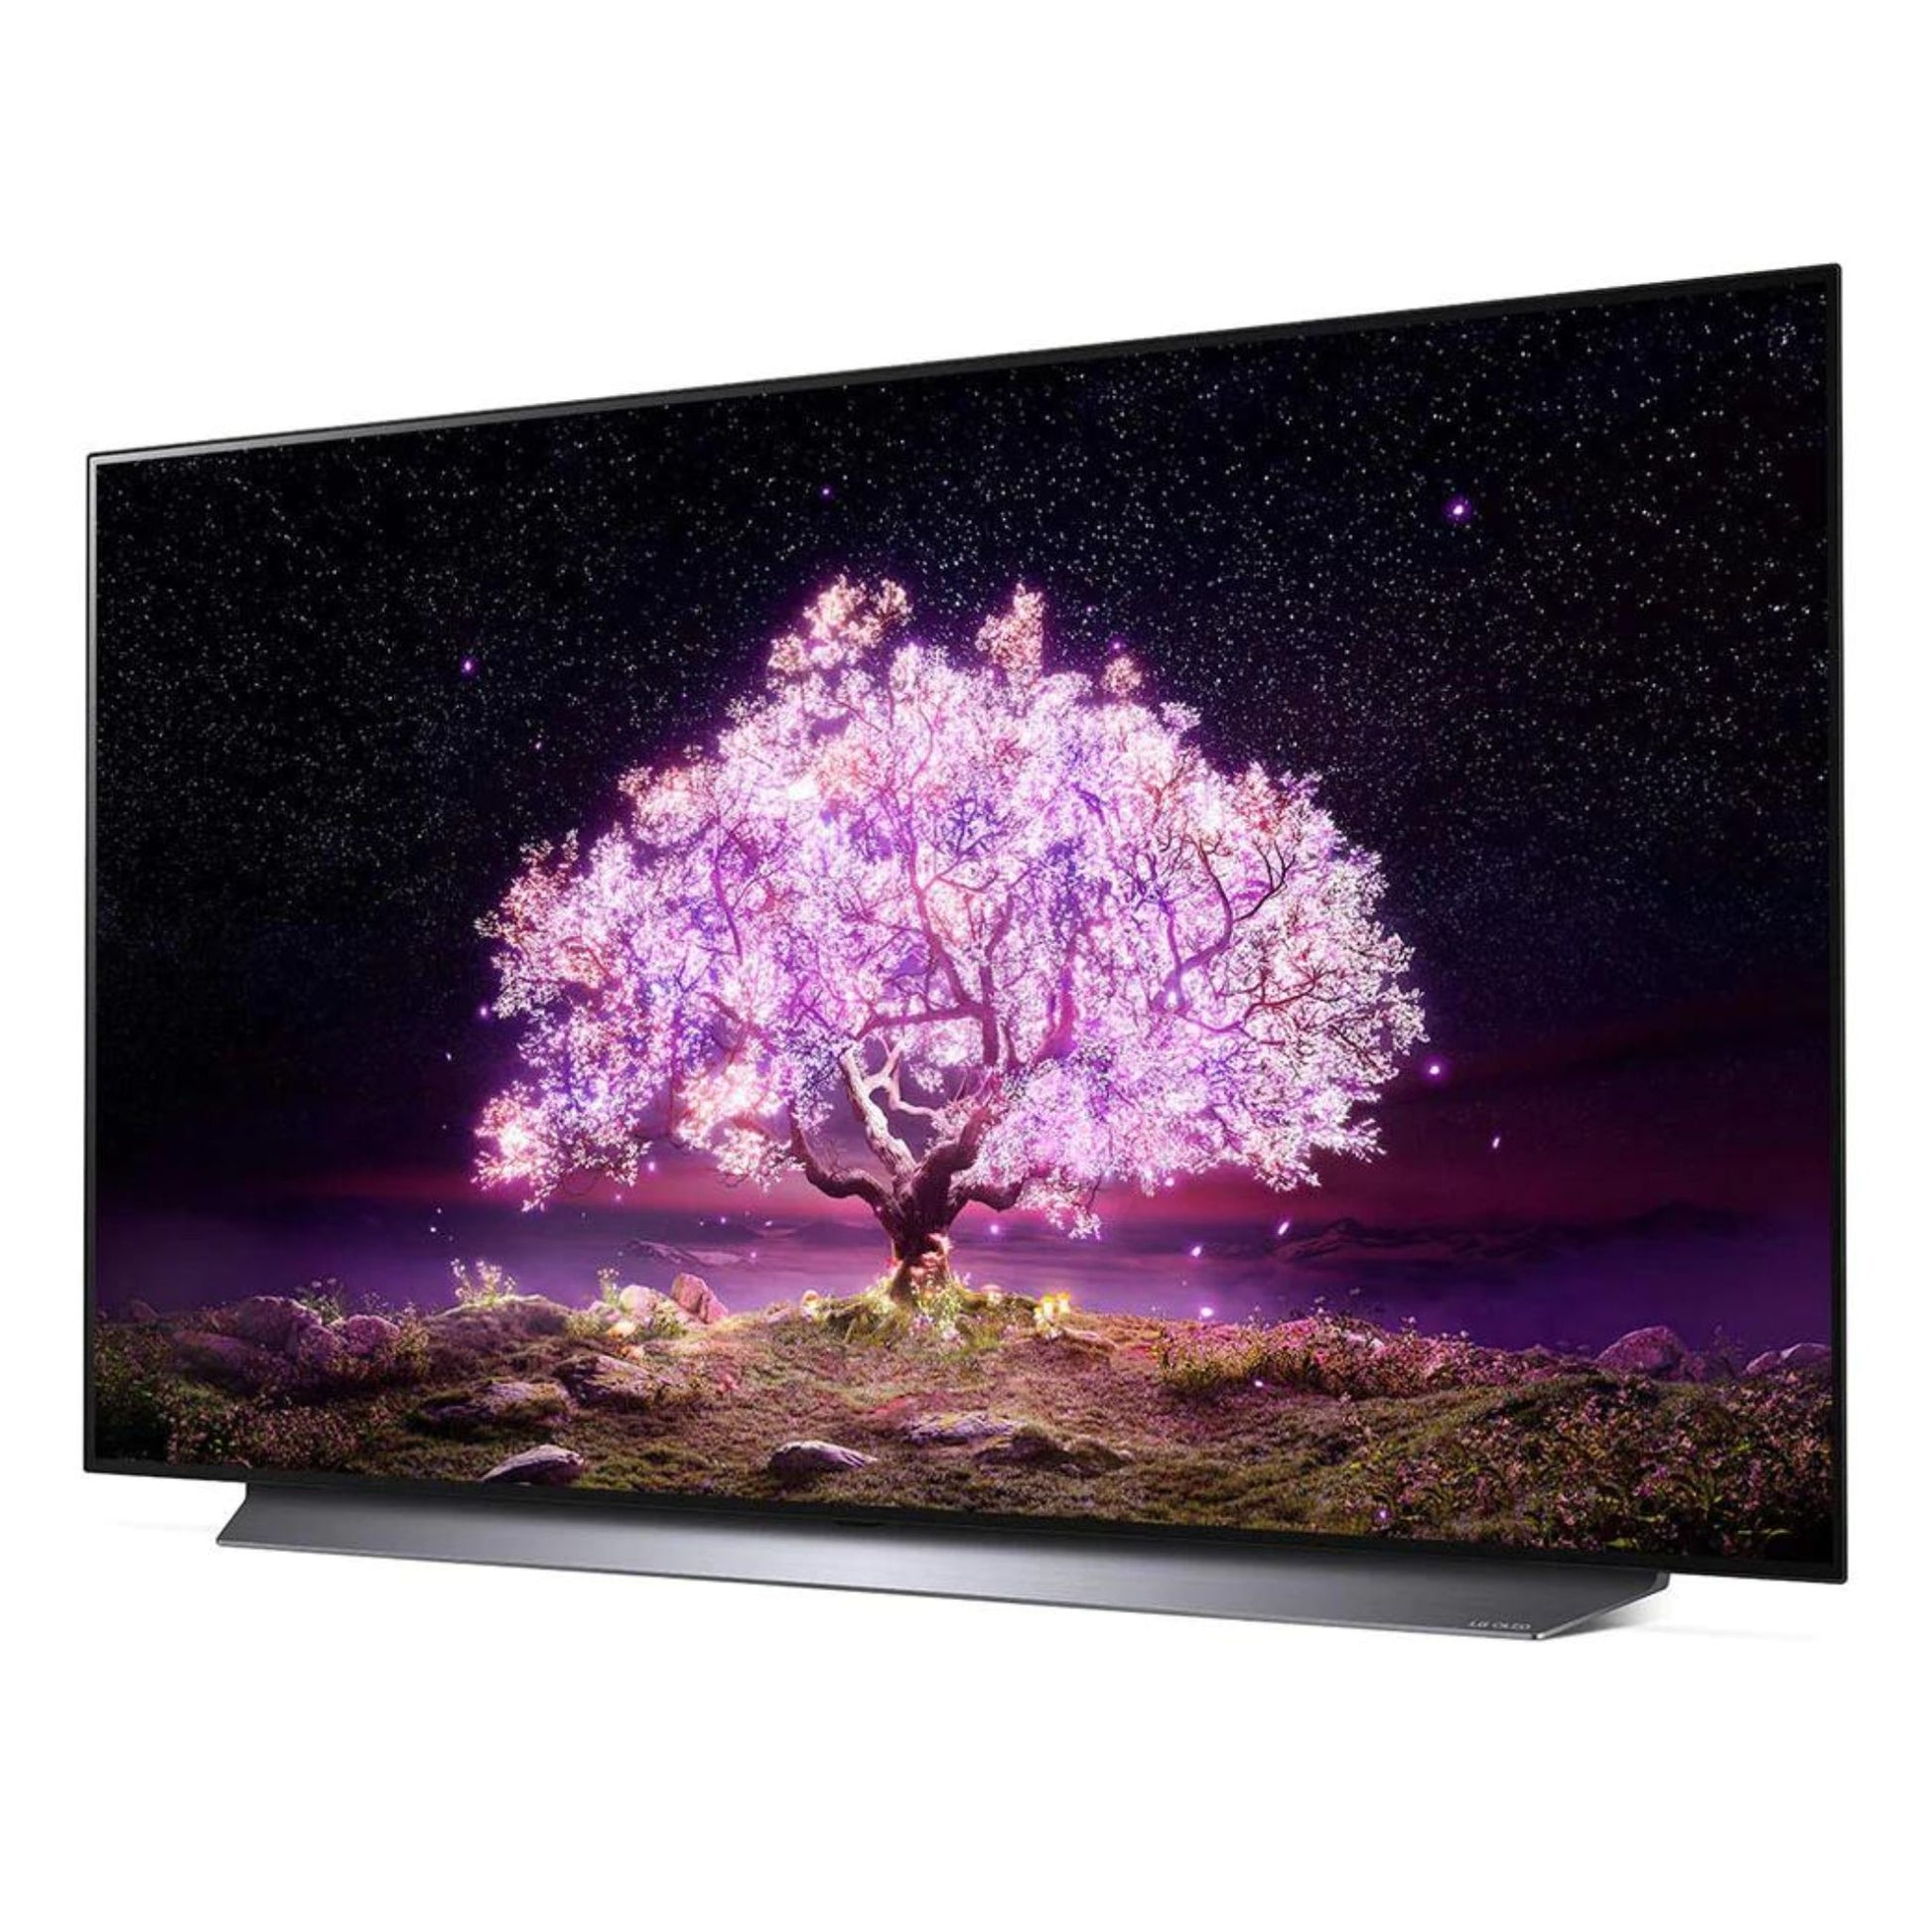 LG 48 inch OLED Smart TV, 48C2